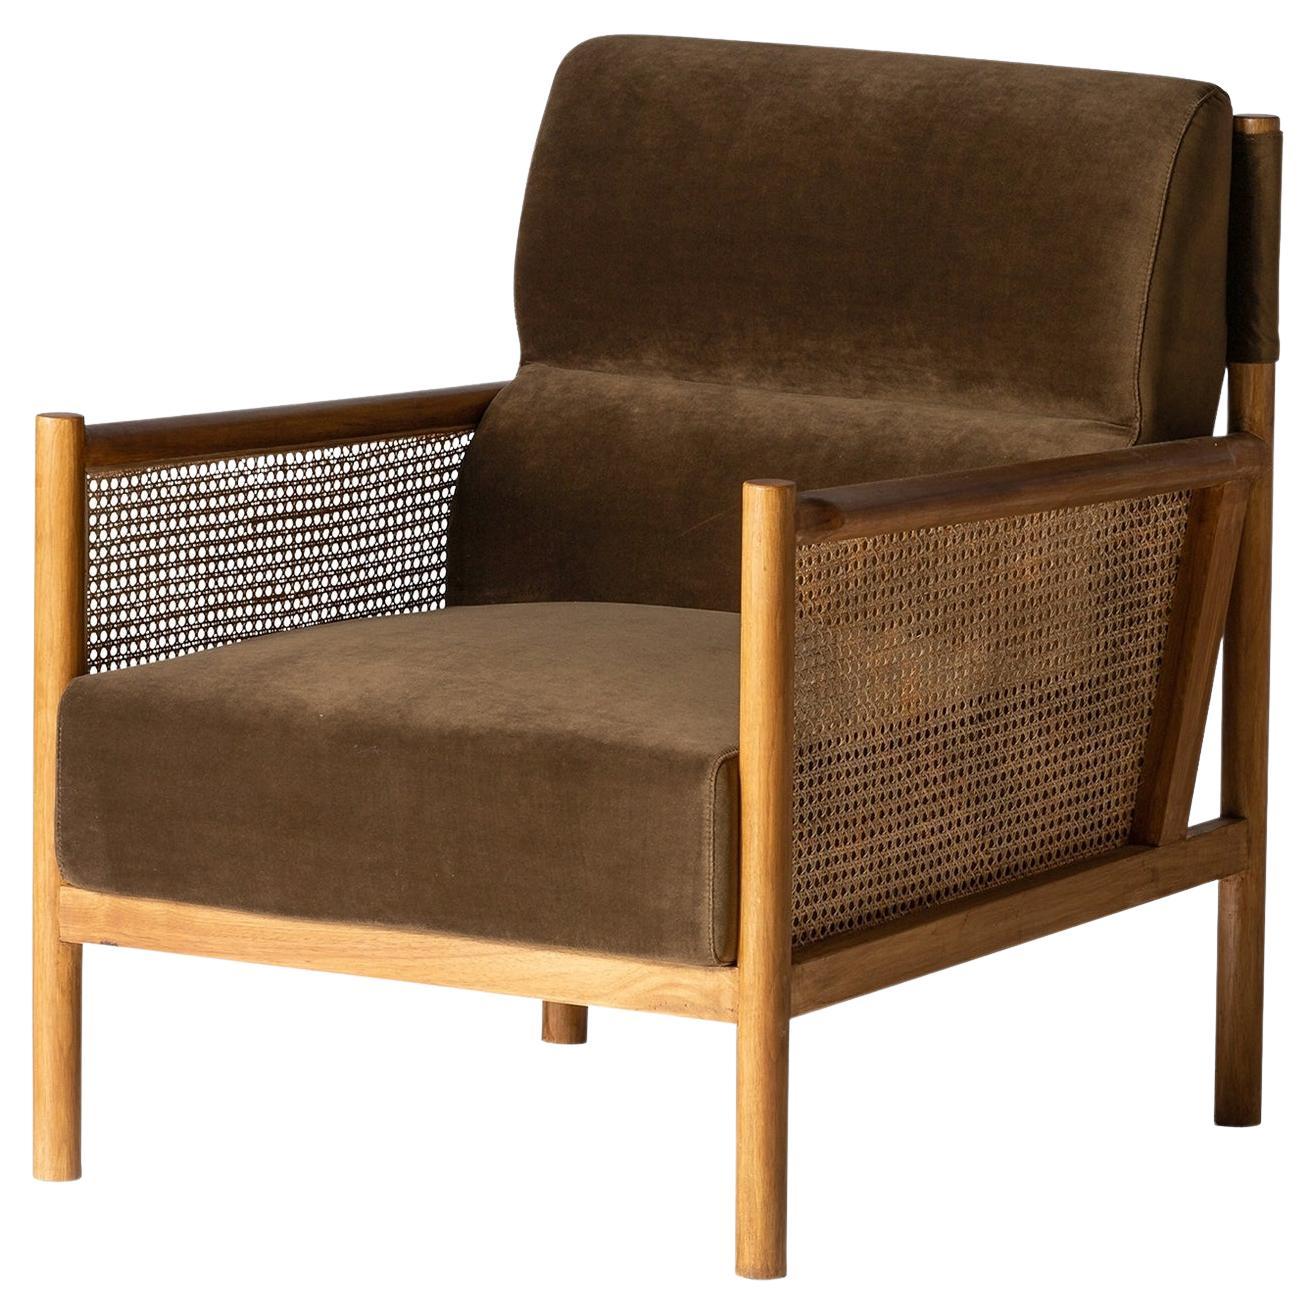 Sessel aus Rohrweide und Holz im skandinavischen und dänischen Stil der 1950er Jahre